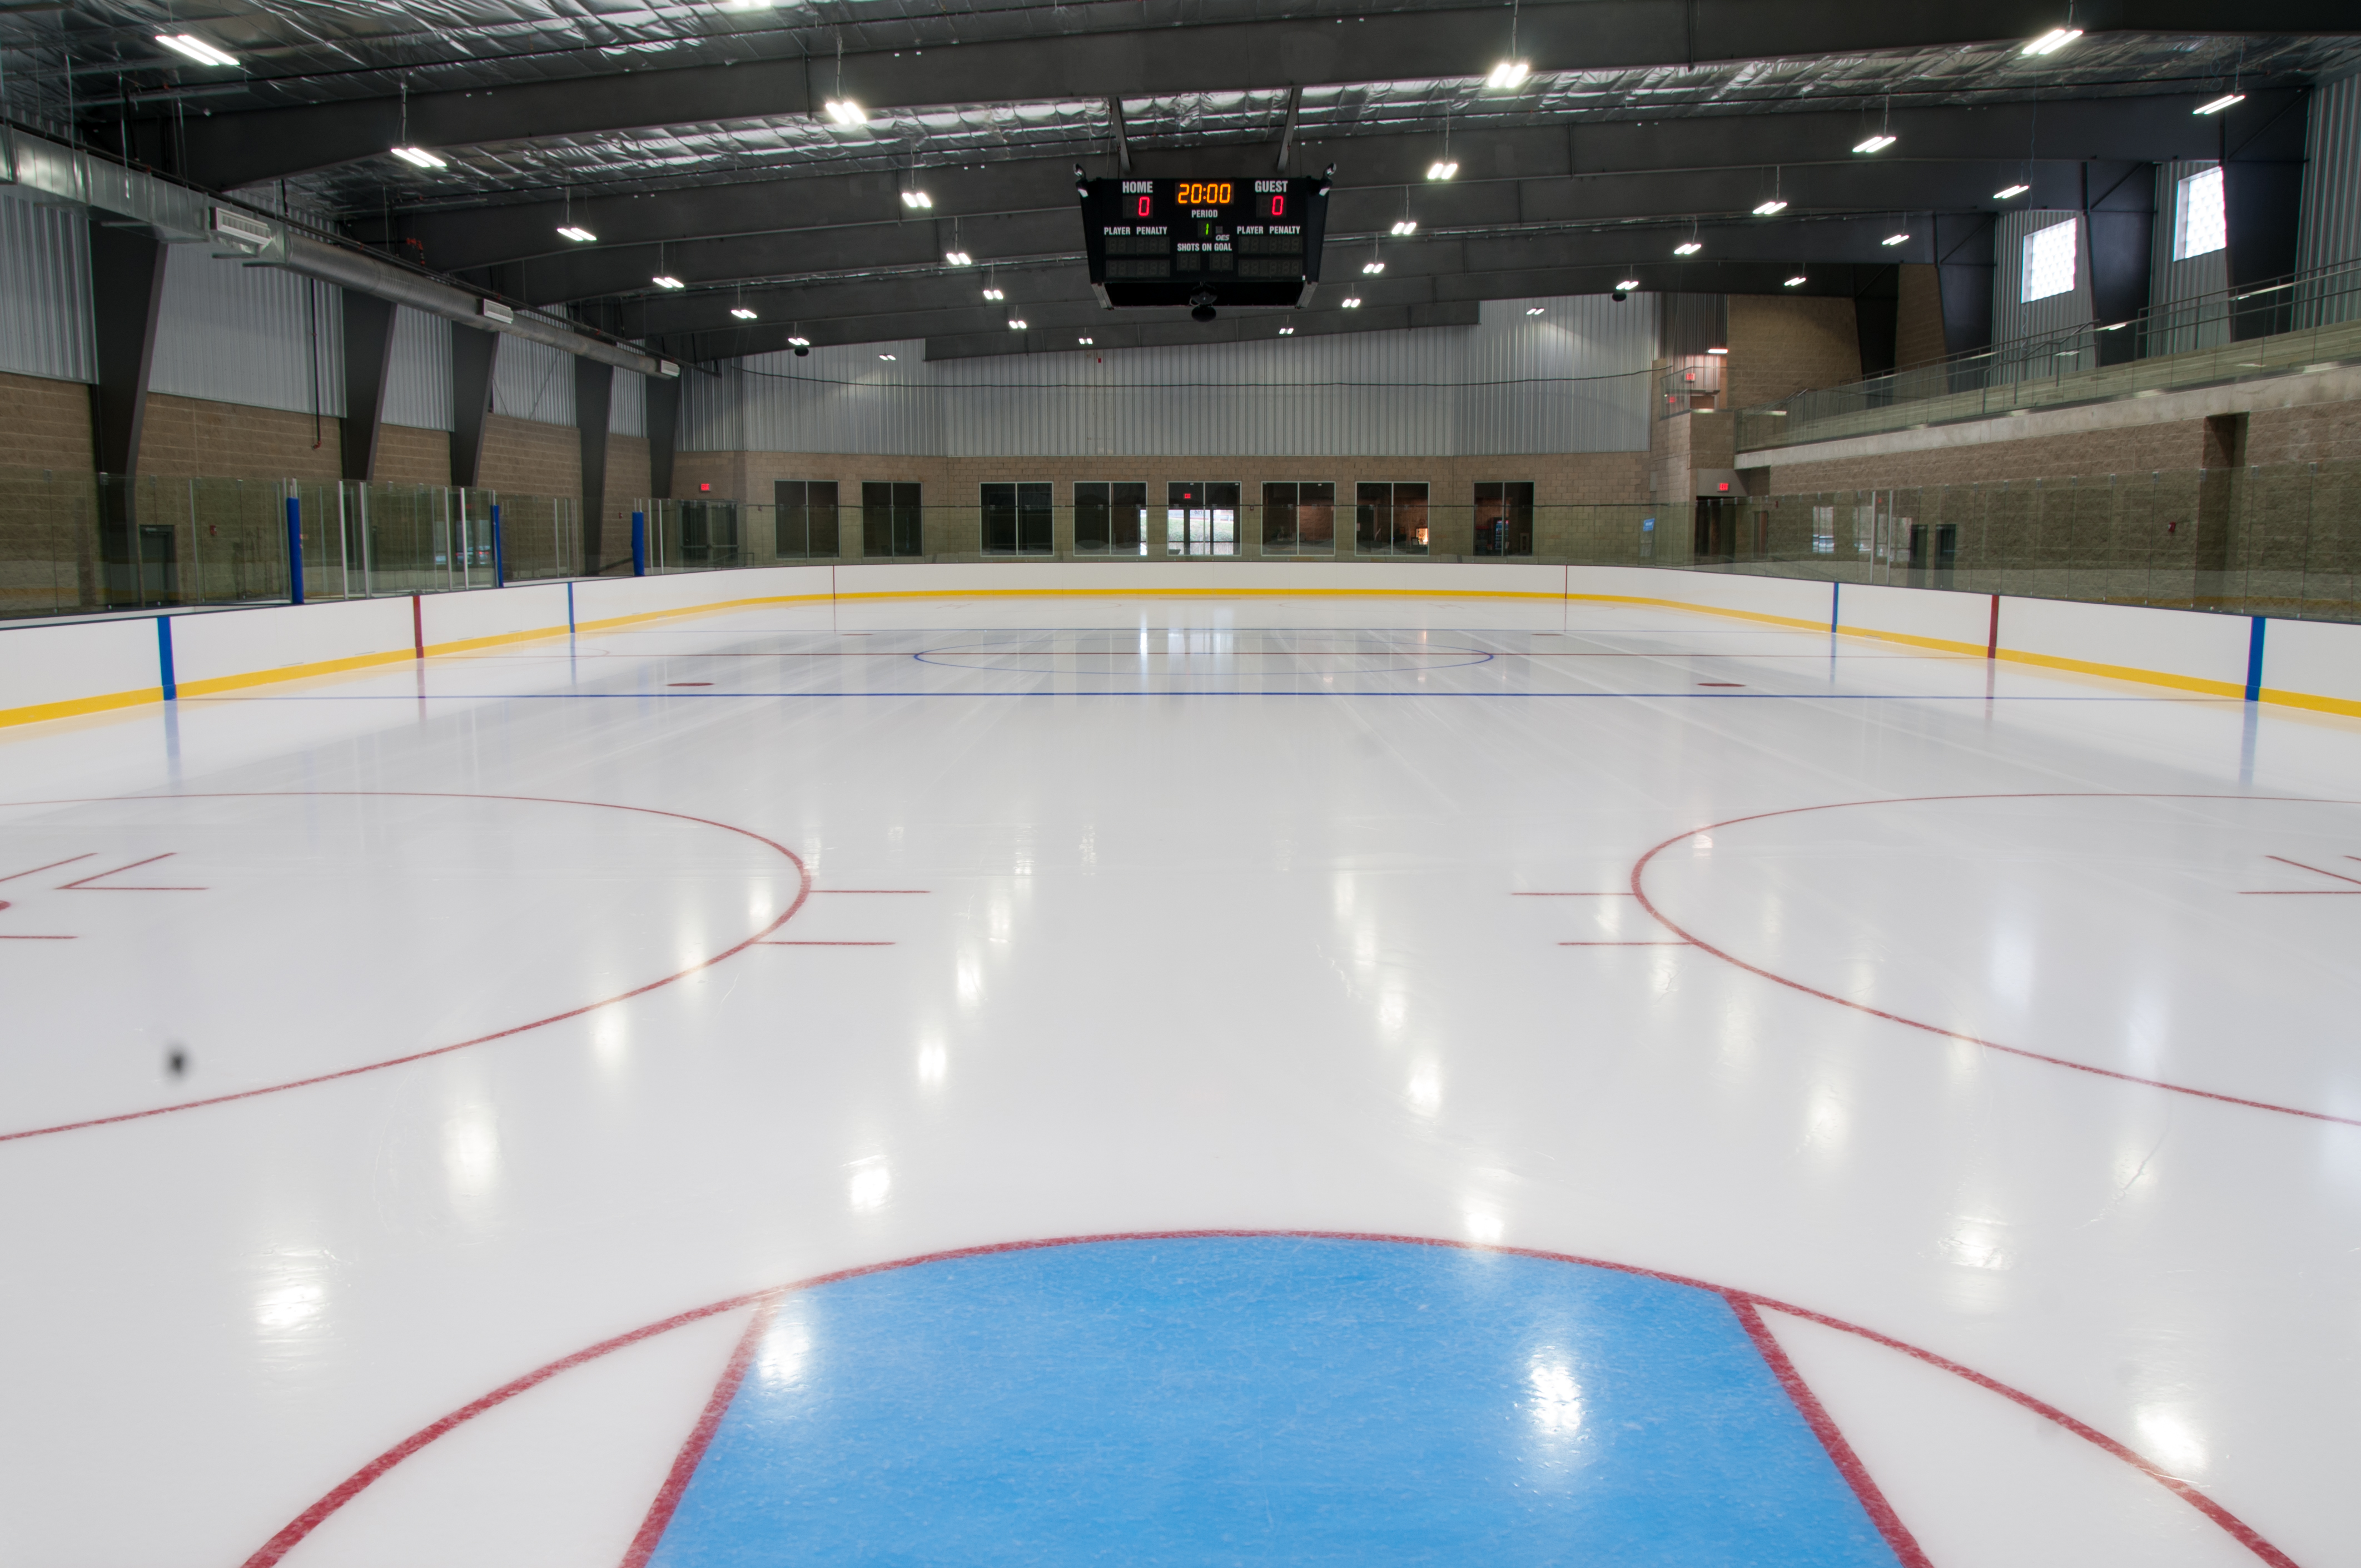 Ice Arena